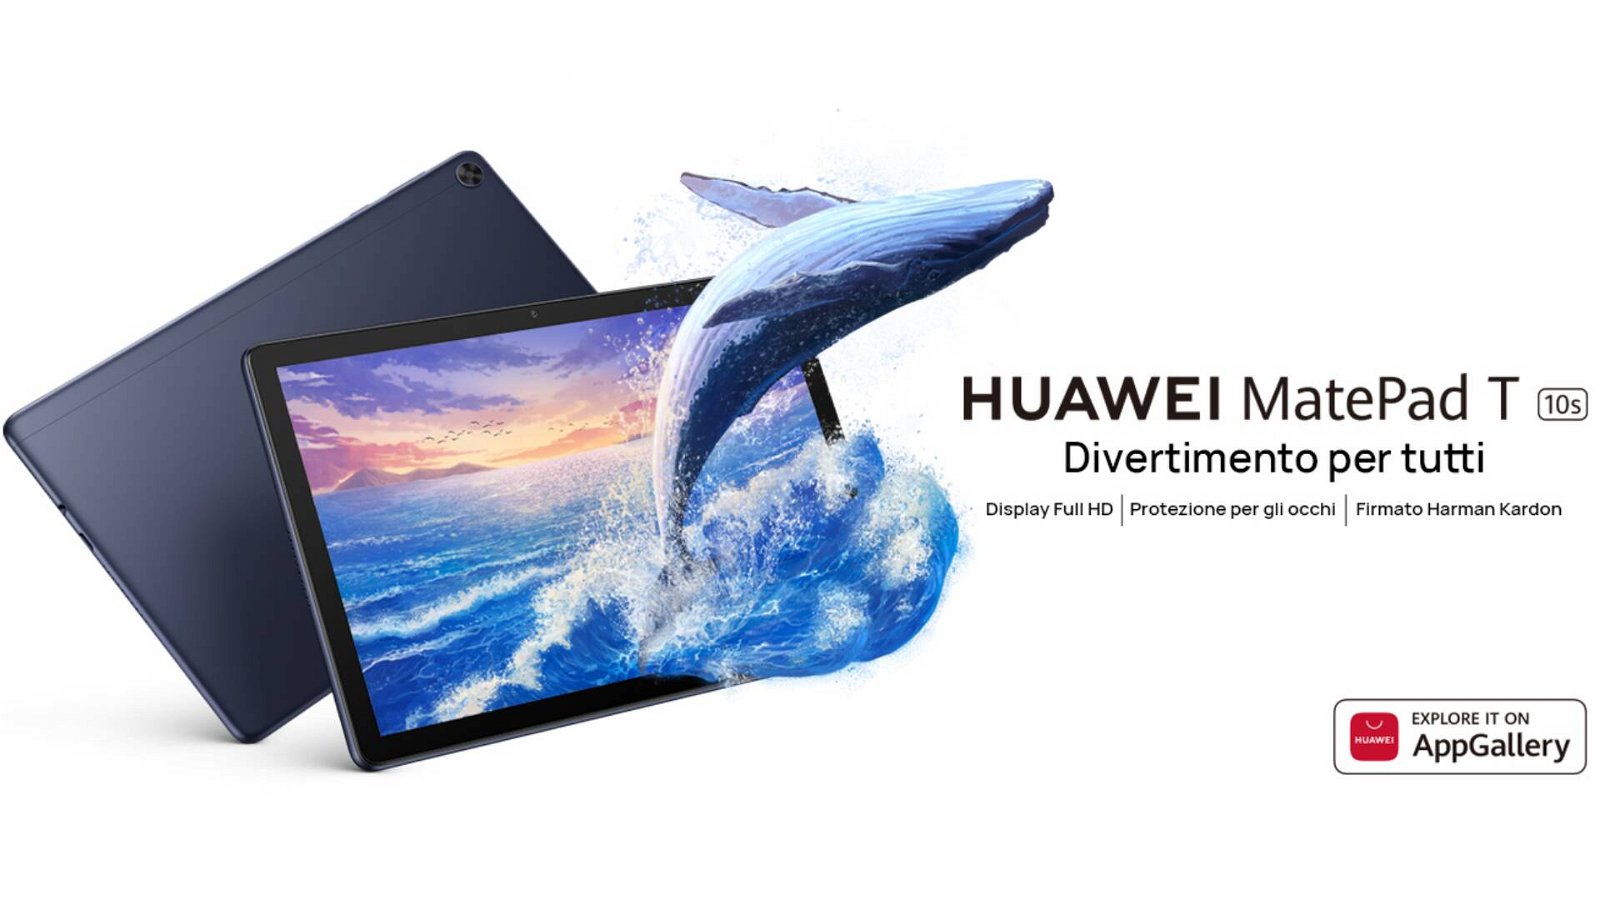 Immagine di Huawei MatePad T 10s: compatto, potente e scontato del 38%!